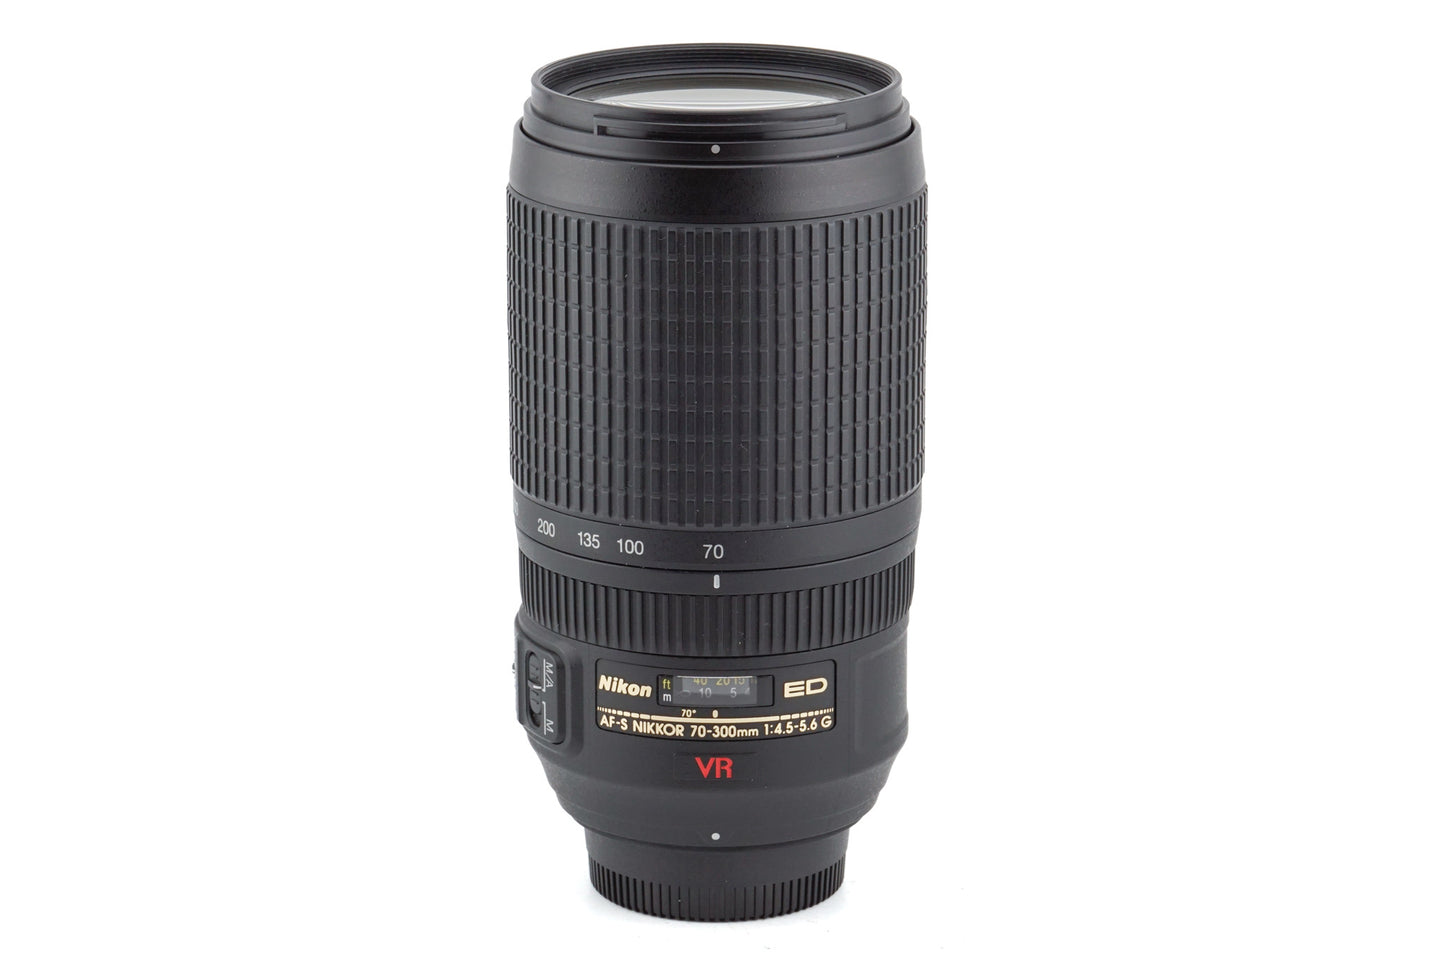 Nikon 70-300mm f4.5-5.6 AF-S Nikkor G ED VR - Lens